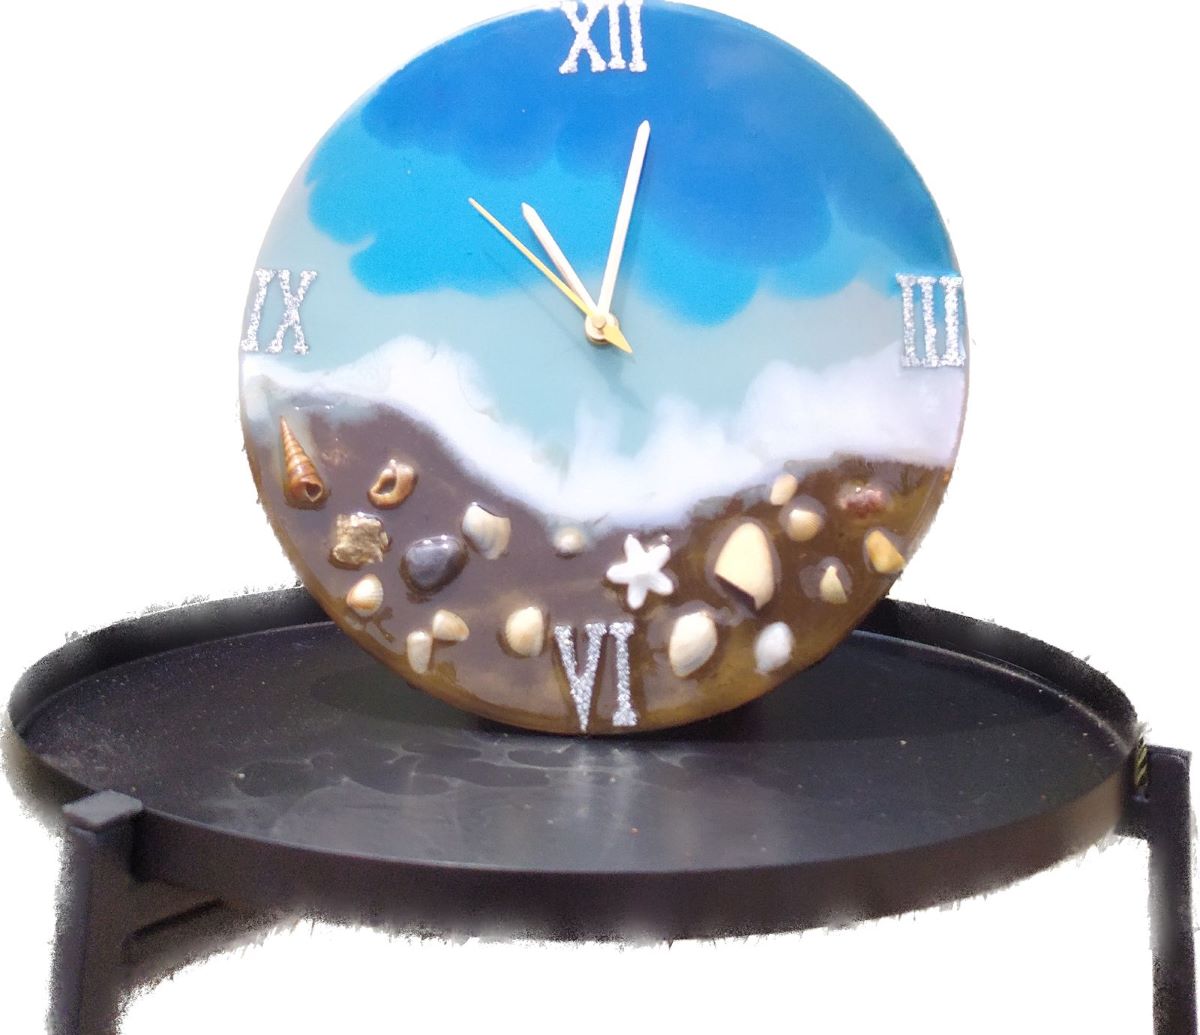 Resin Oceanic Wall Clock (Dia 10")